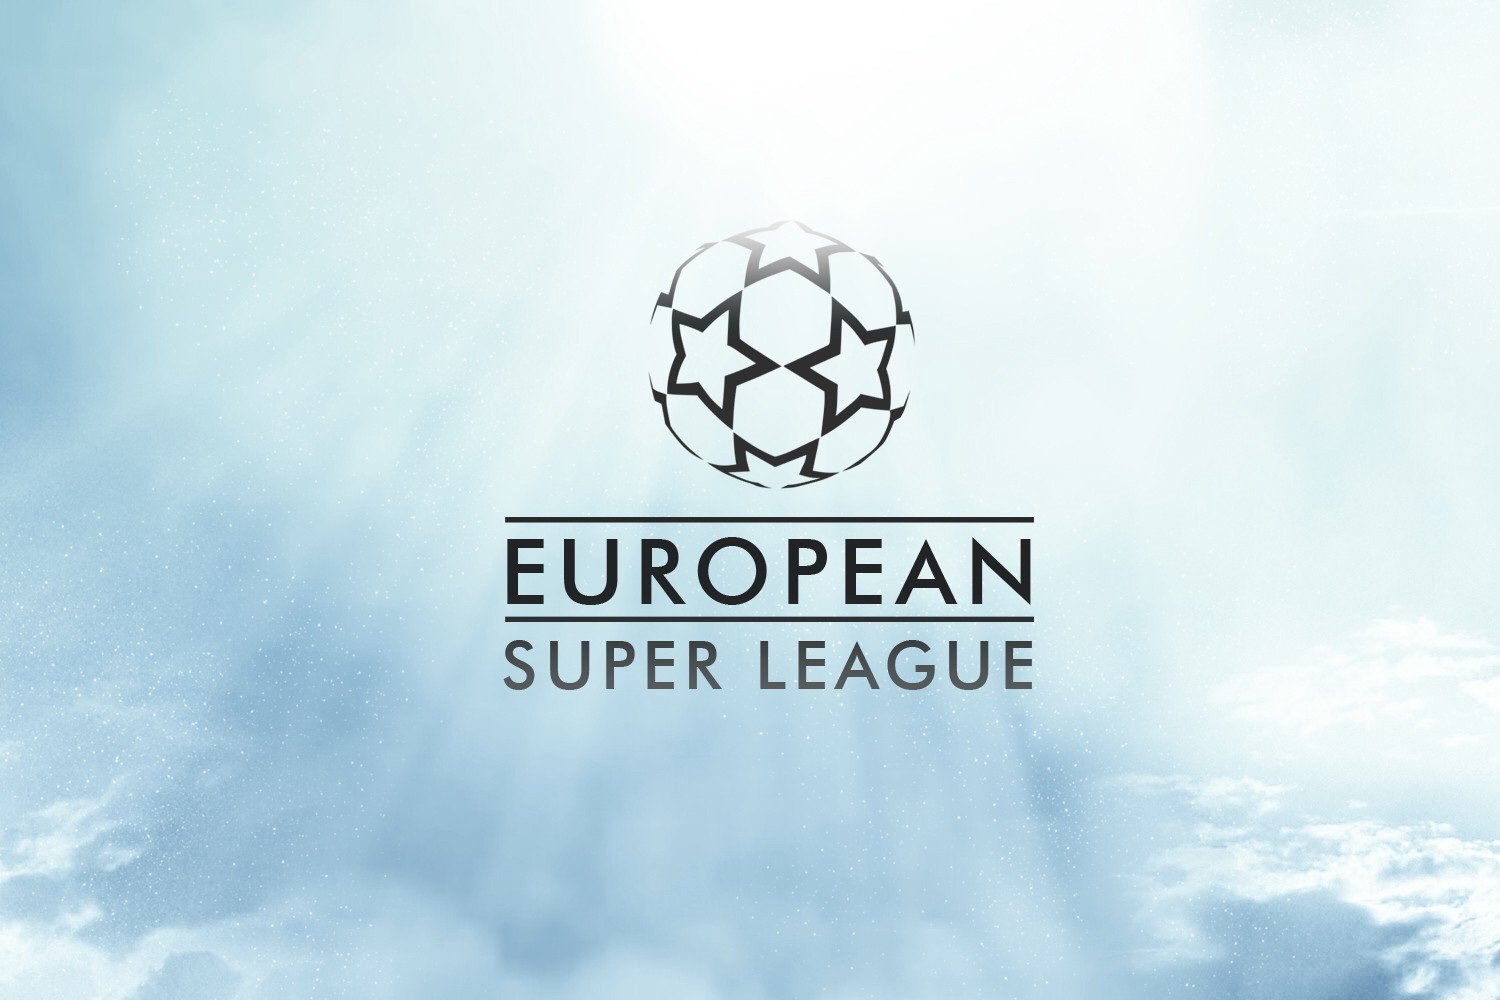 SUPERLIGA EUROPEIA - A nova maior competição de clubes?